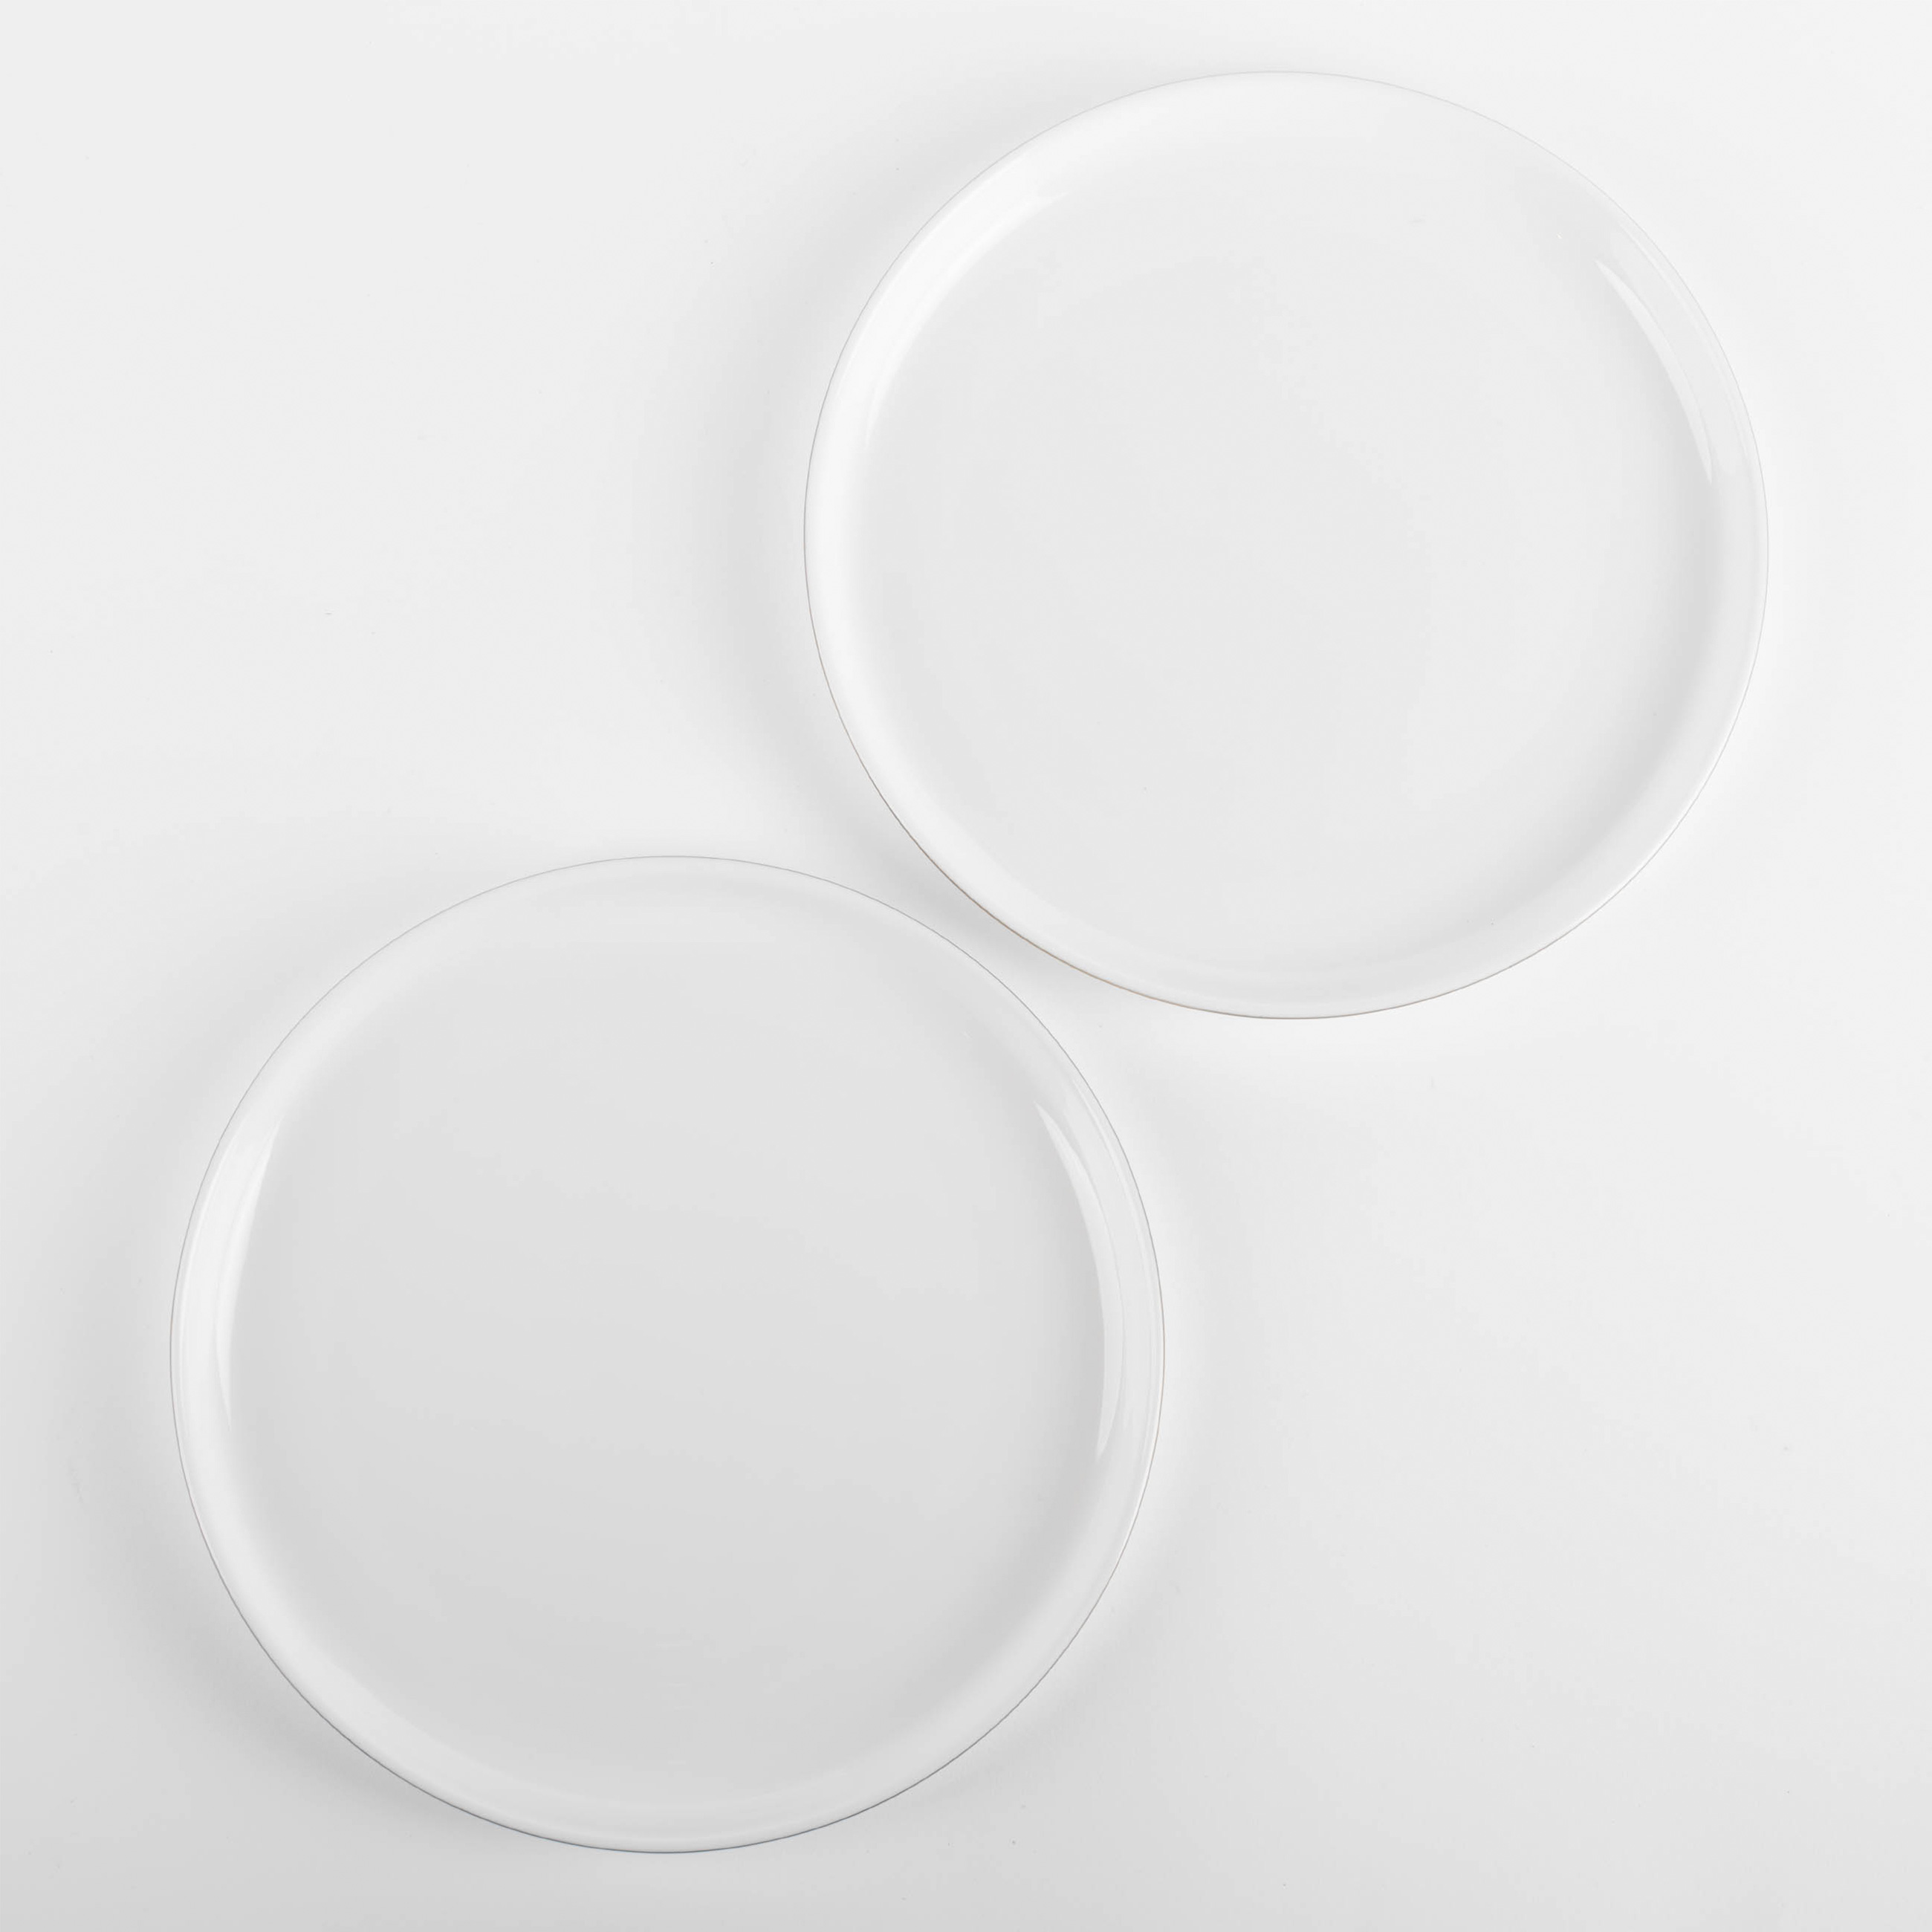 Тарелка десертная, 20 см, 2 шт, фарфор F, белая, Ideal gold изображение № 4